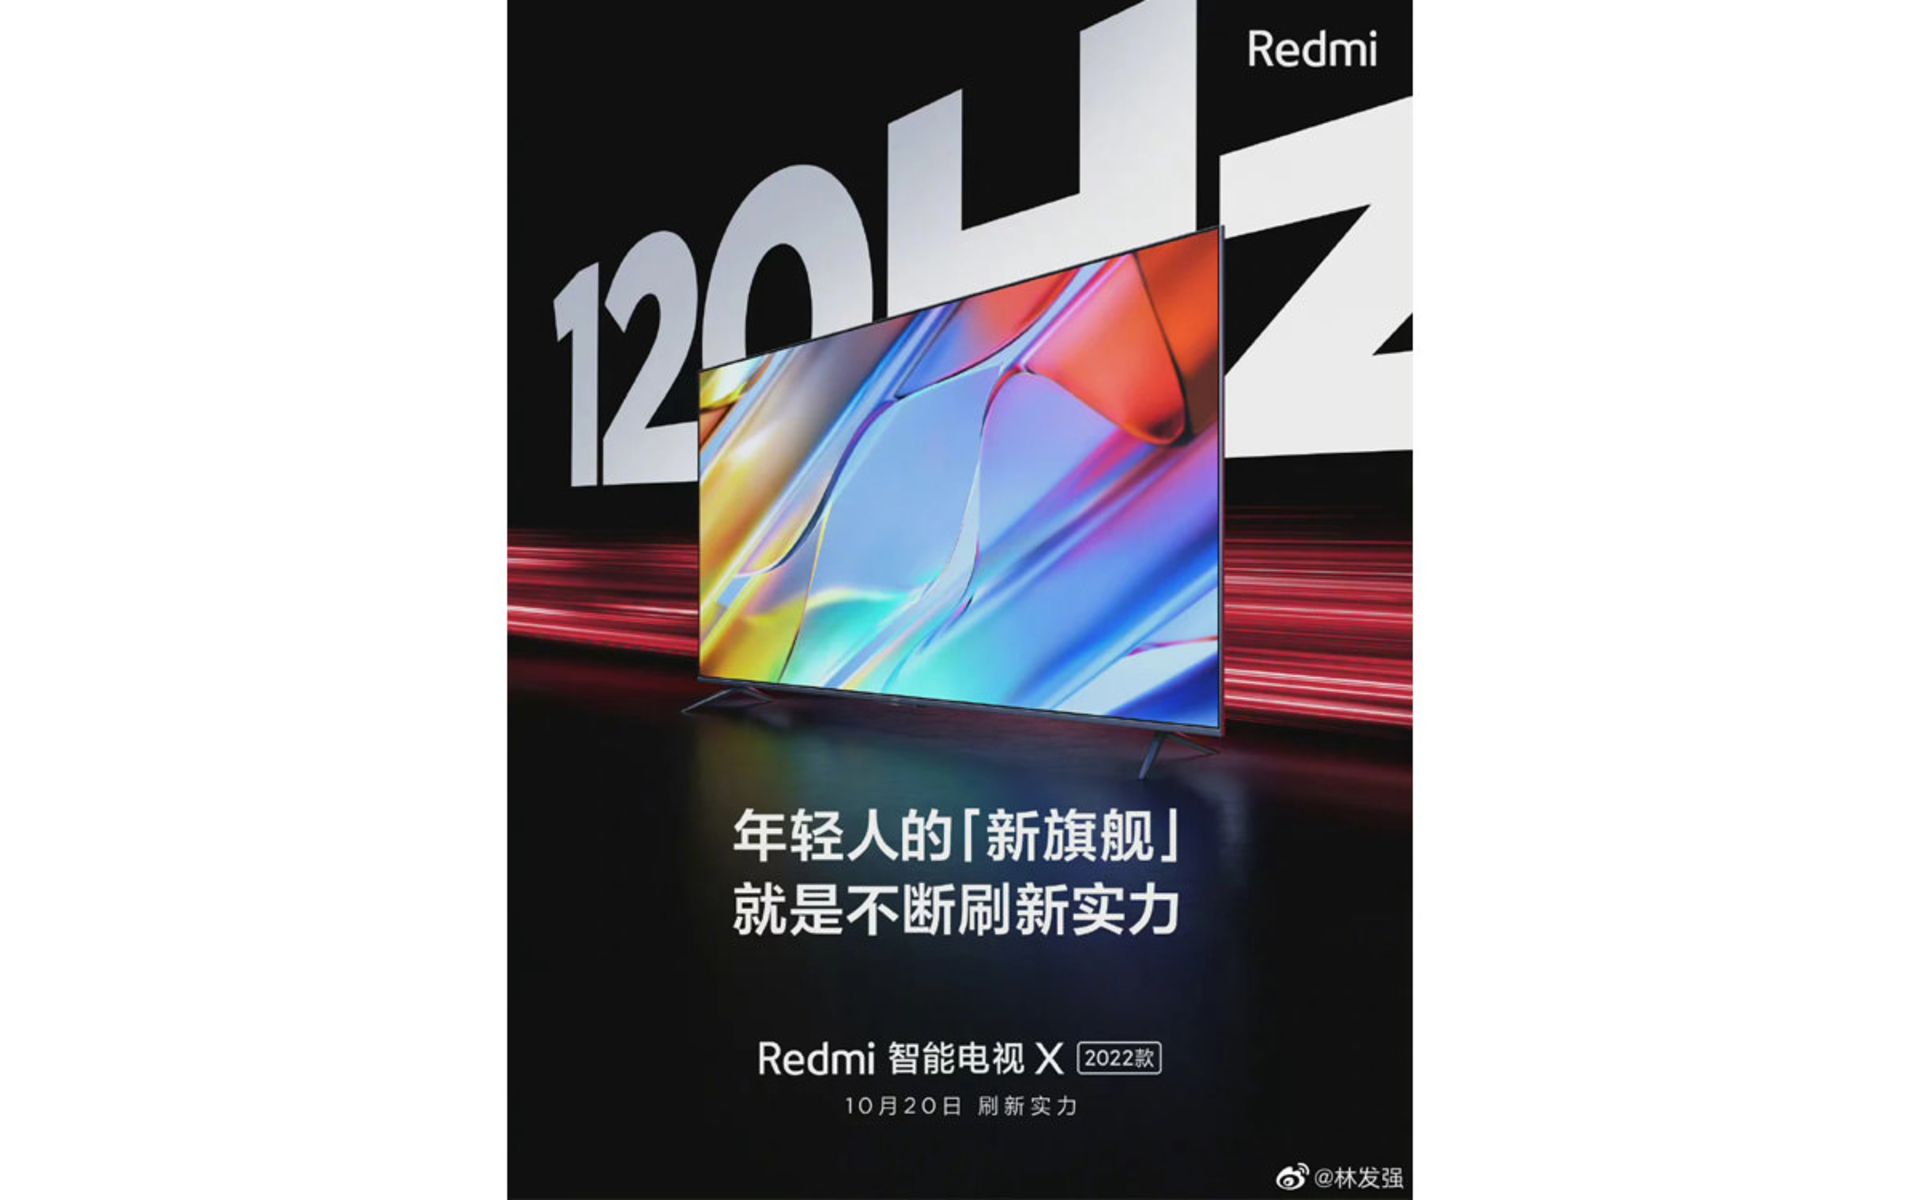 تلویزیون Redmi Smart TV X 2022 با نرخ نوسازی ۱۲۰ هرتز